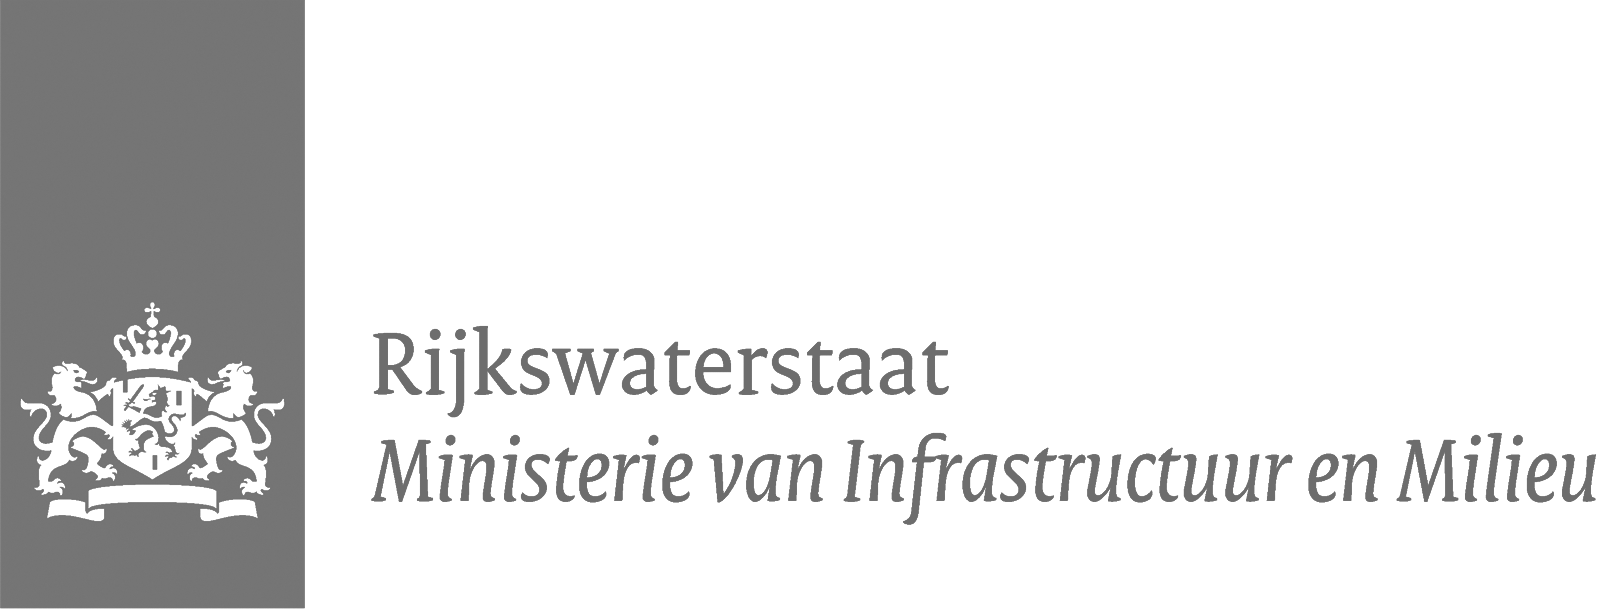 Rijkswaterstaat, ministerie infrastructuur